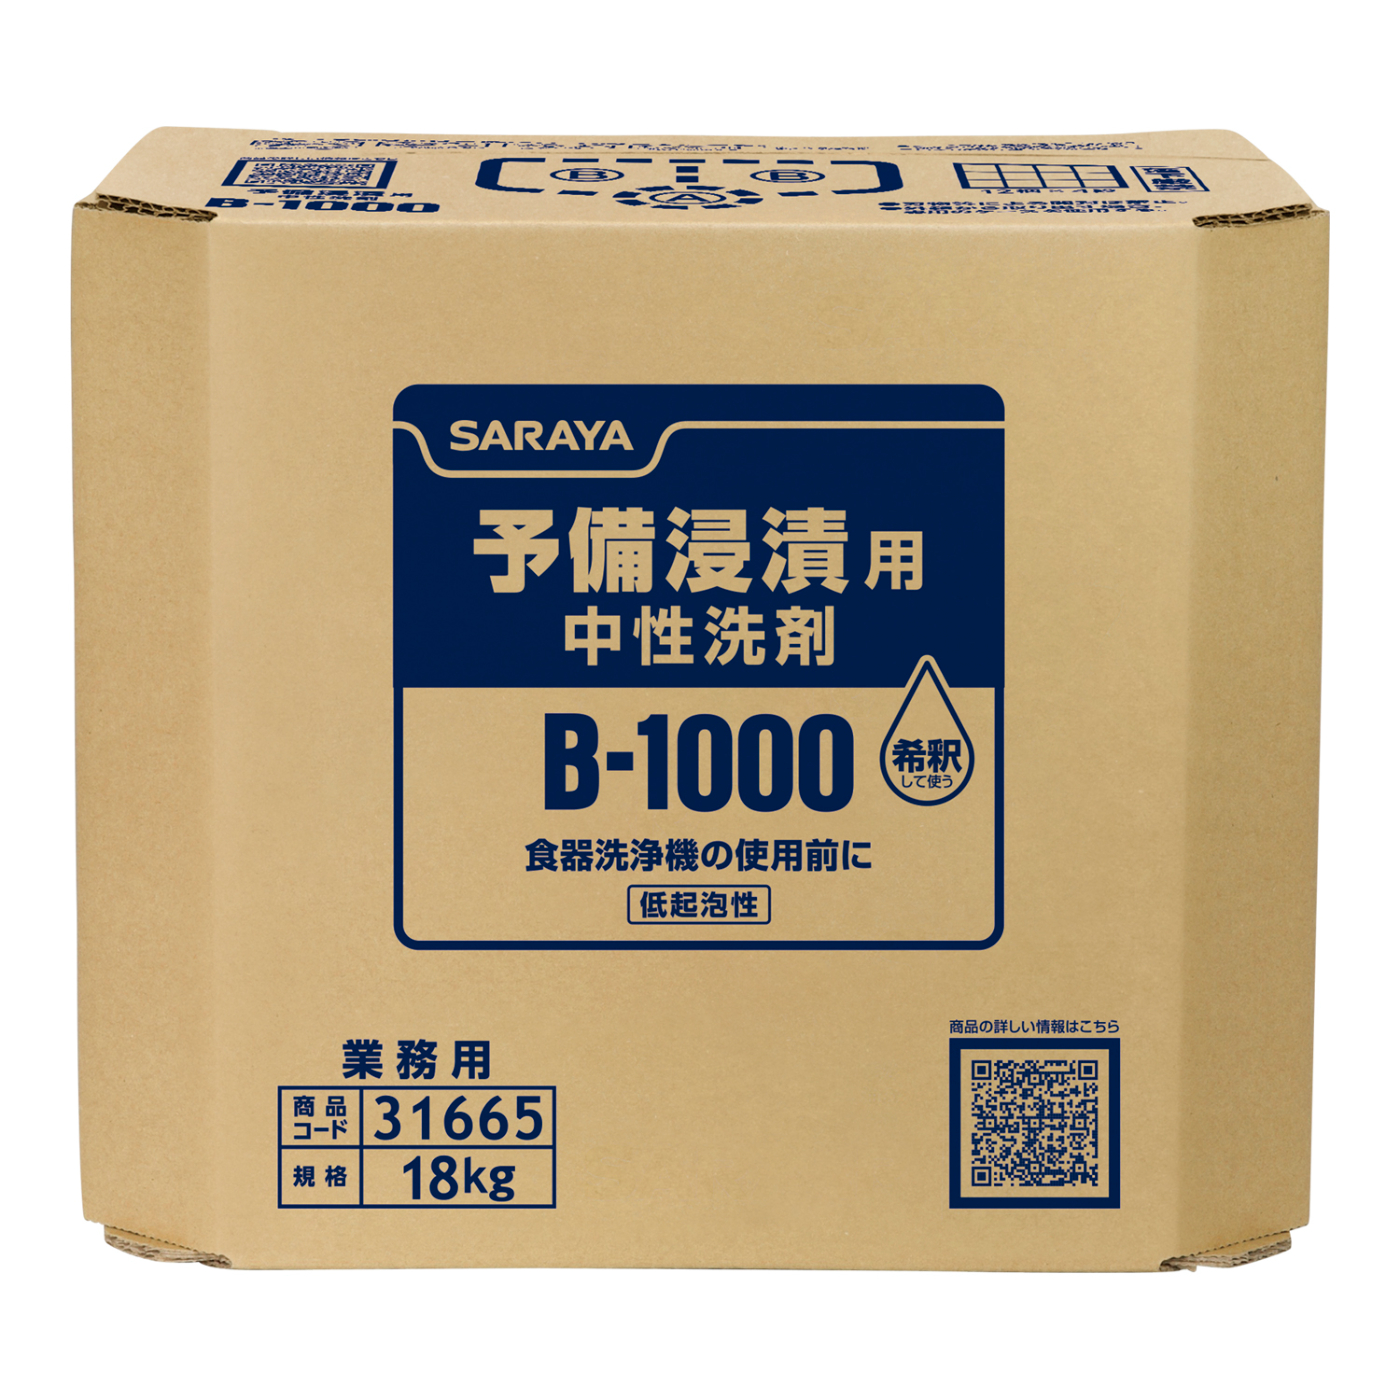 B-1000 18kg B.I.B. | B-1000 | 製品情報 | サラヤ業務用製品情報 PRO